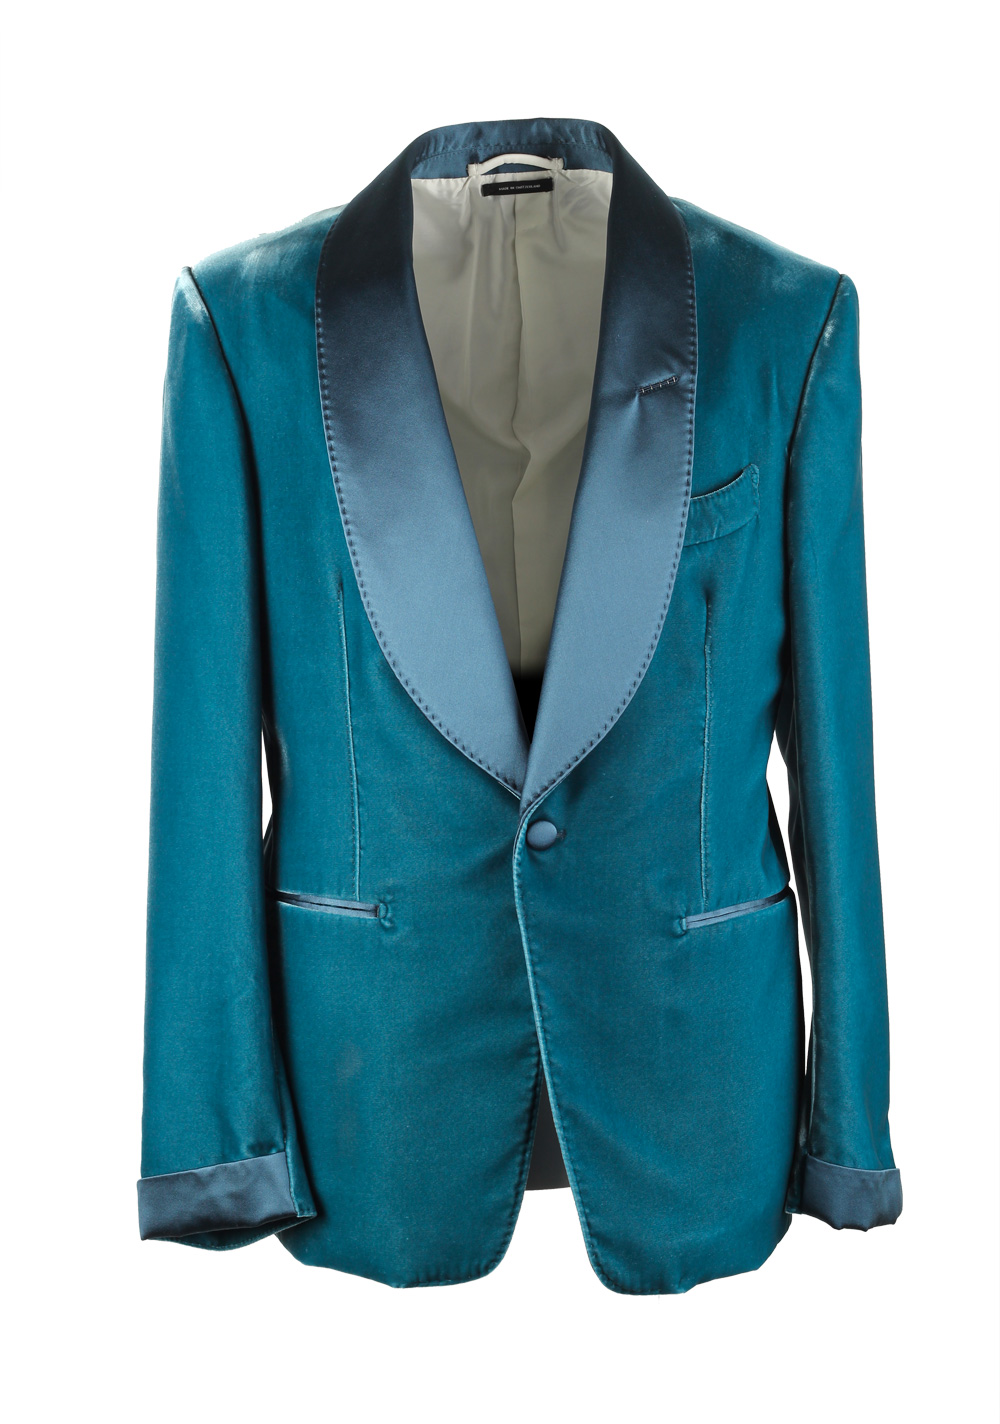 TOM FORD Shelton Velvet Teal Sport Coat Tuxedo Dinner Jacket Size 48C ...